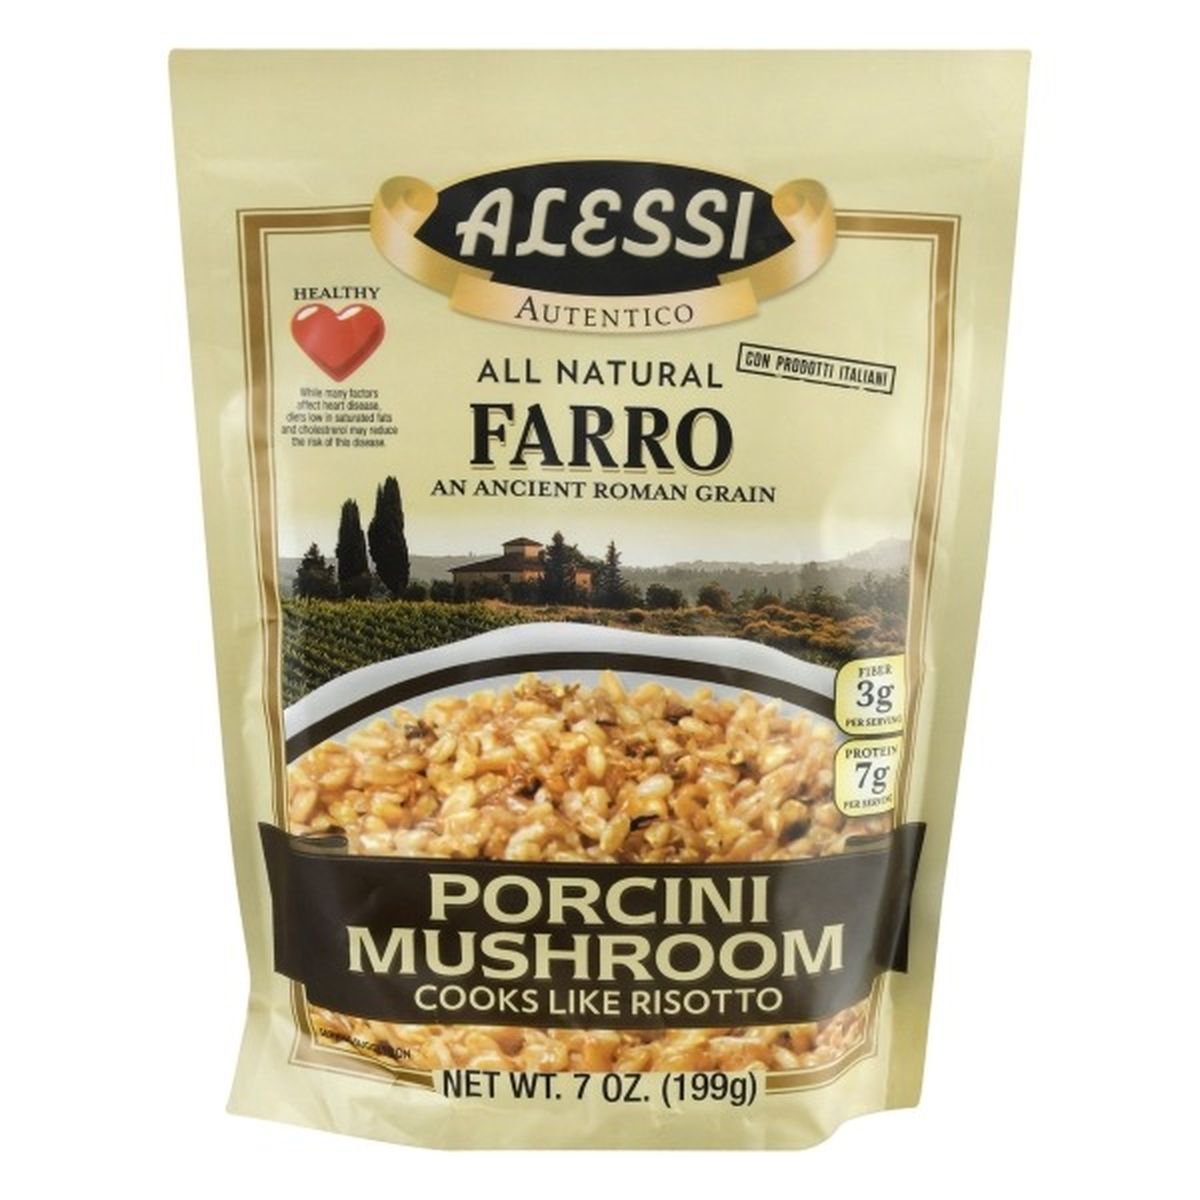 Calories in Alessi Farro, Porcini Mushroom